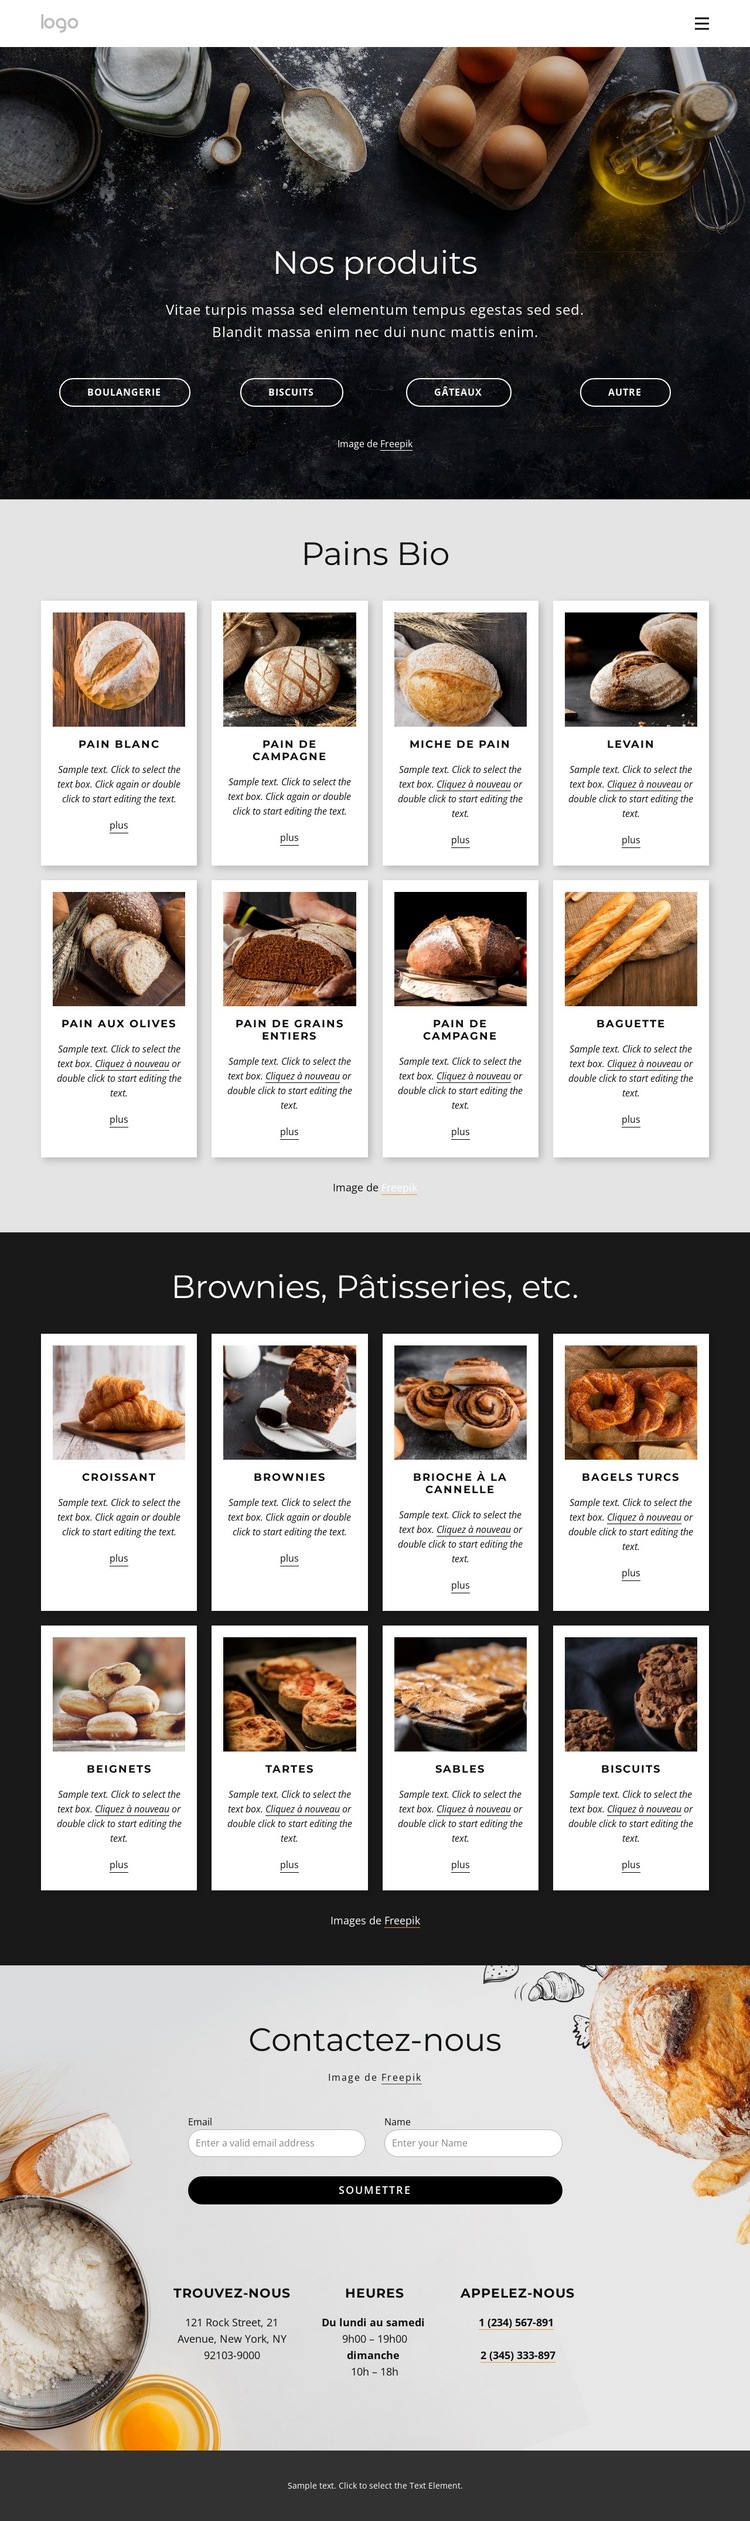 Menu pain bio Modèle de site Web